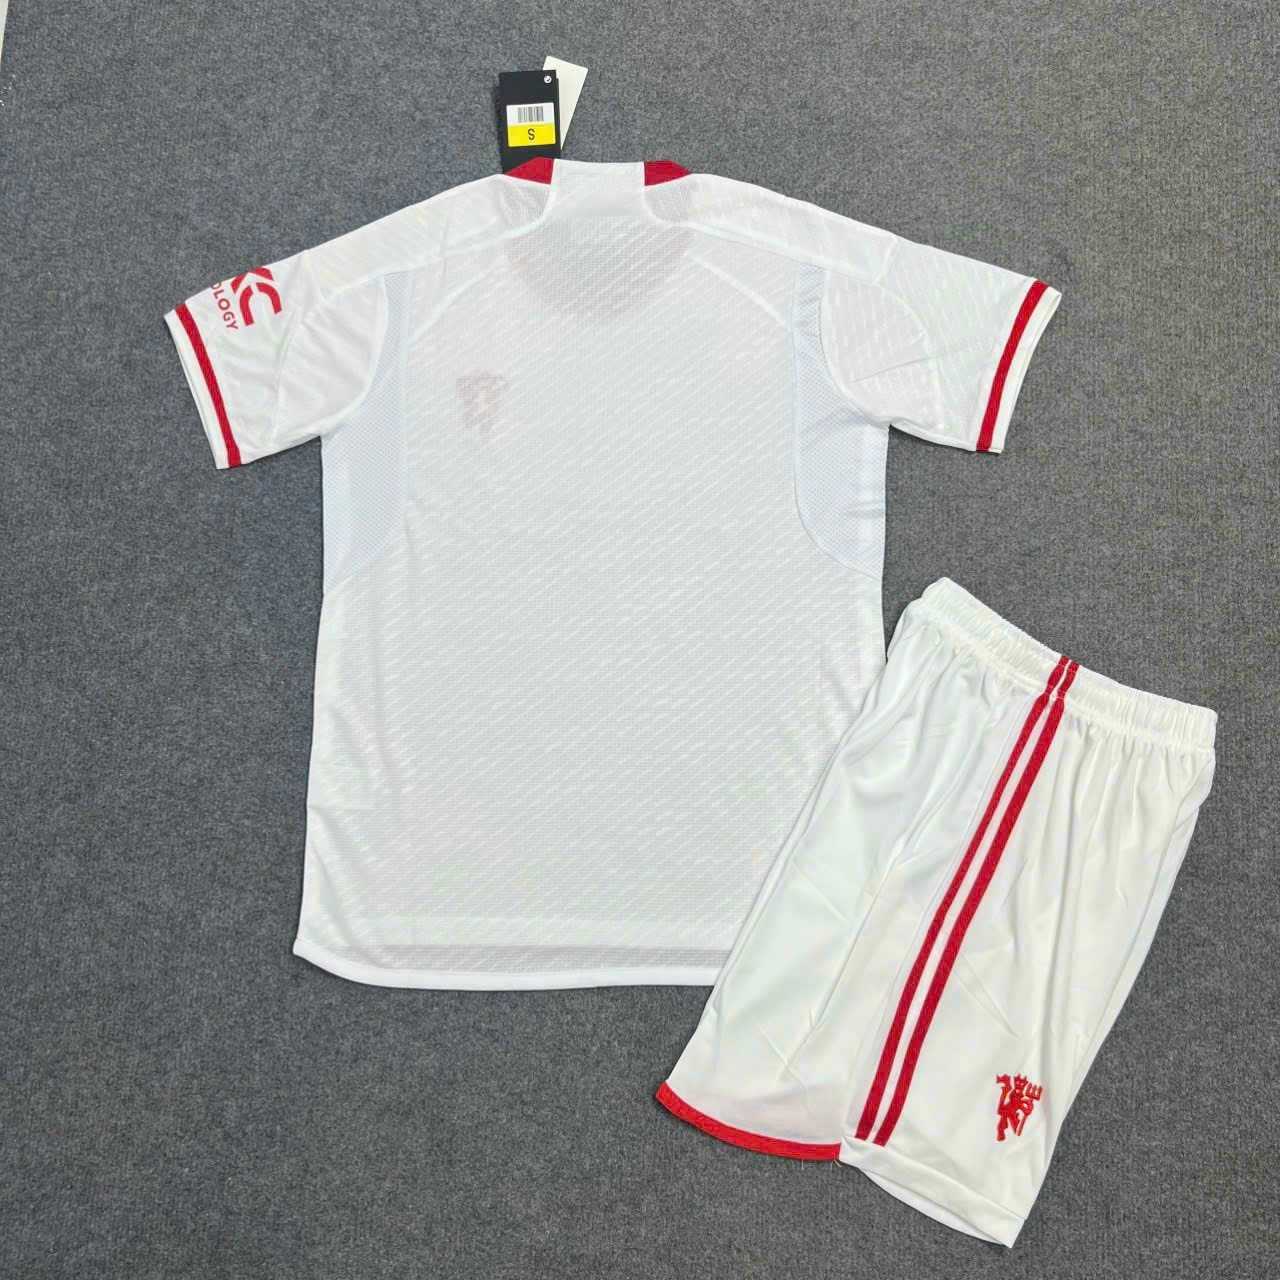 Bộ quần áo đá banh clb bóng đá mu manchester united third 2324 trắng logo đỏ thêu năm 2023 2024 3 sọc 1